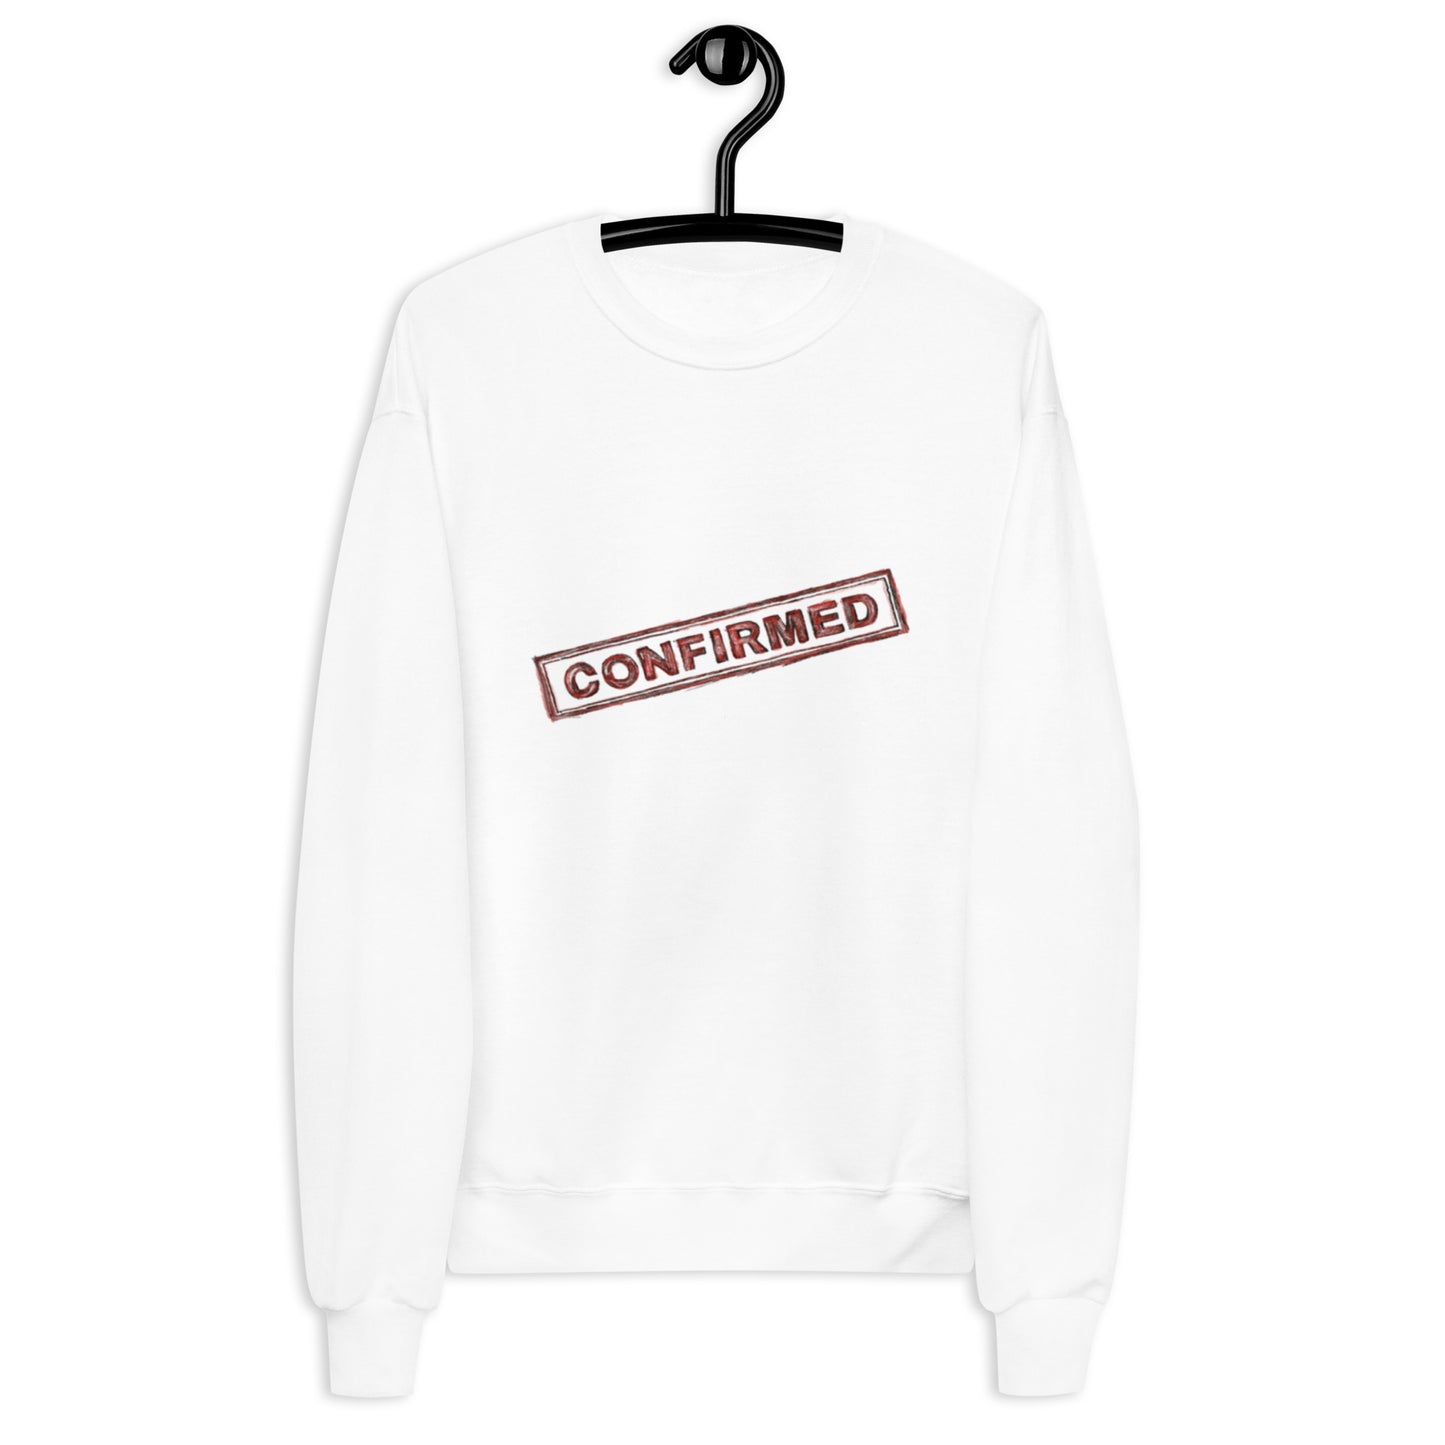 Graphic unisex sweatshirt “Confirmed” stamp